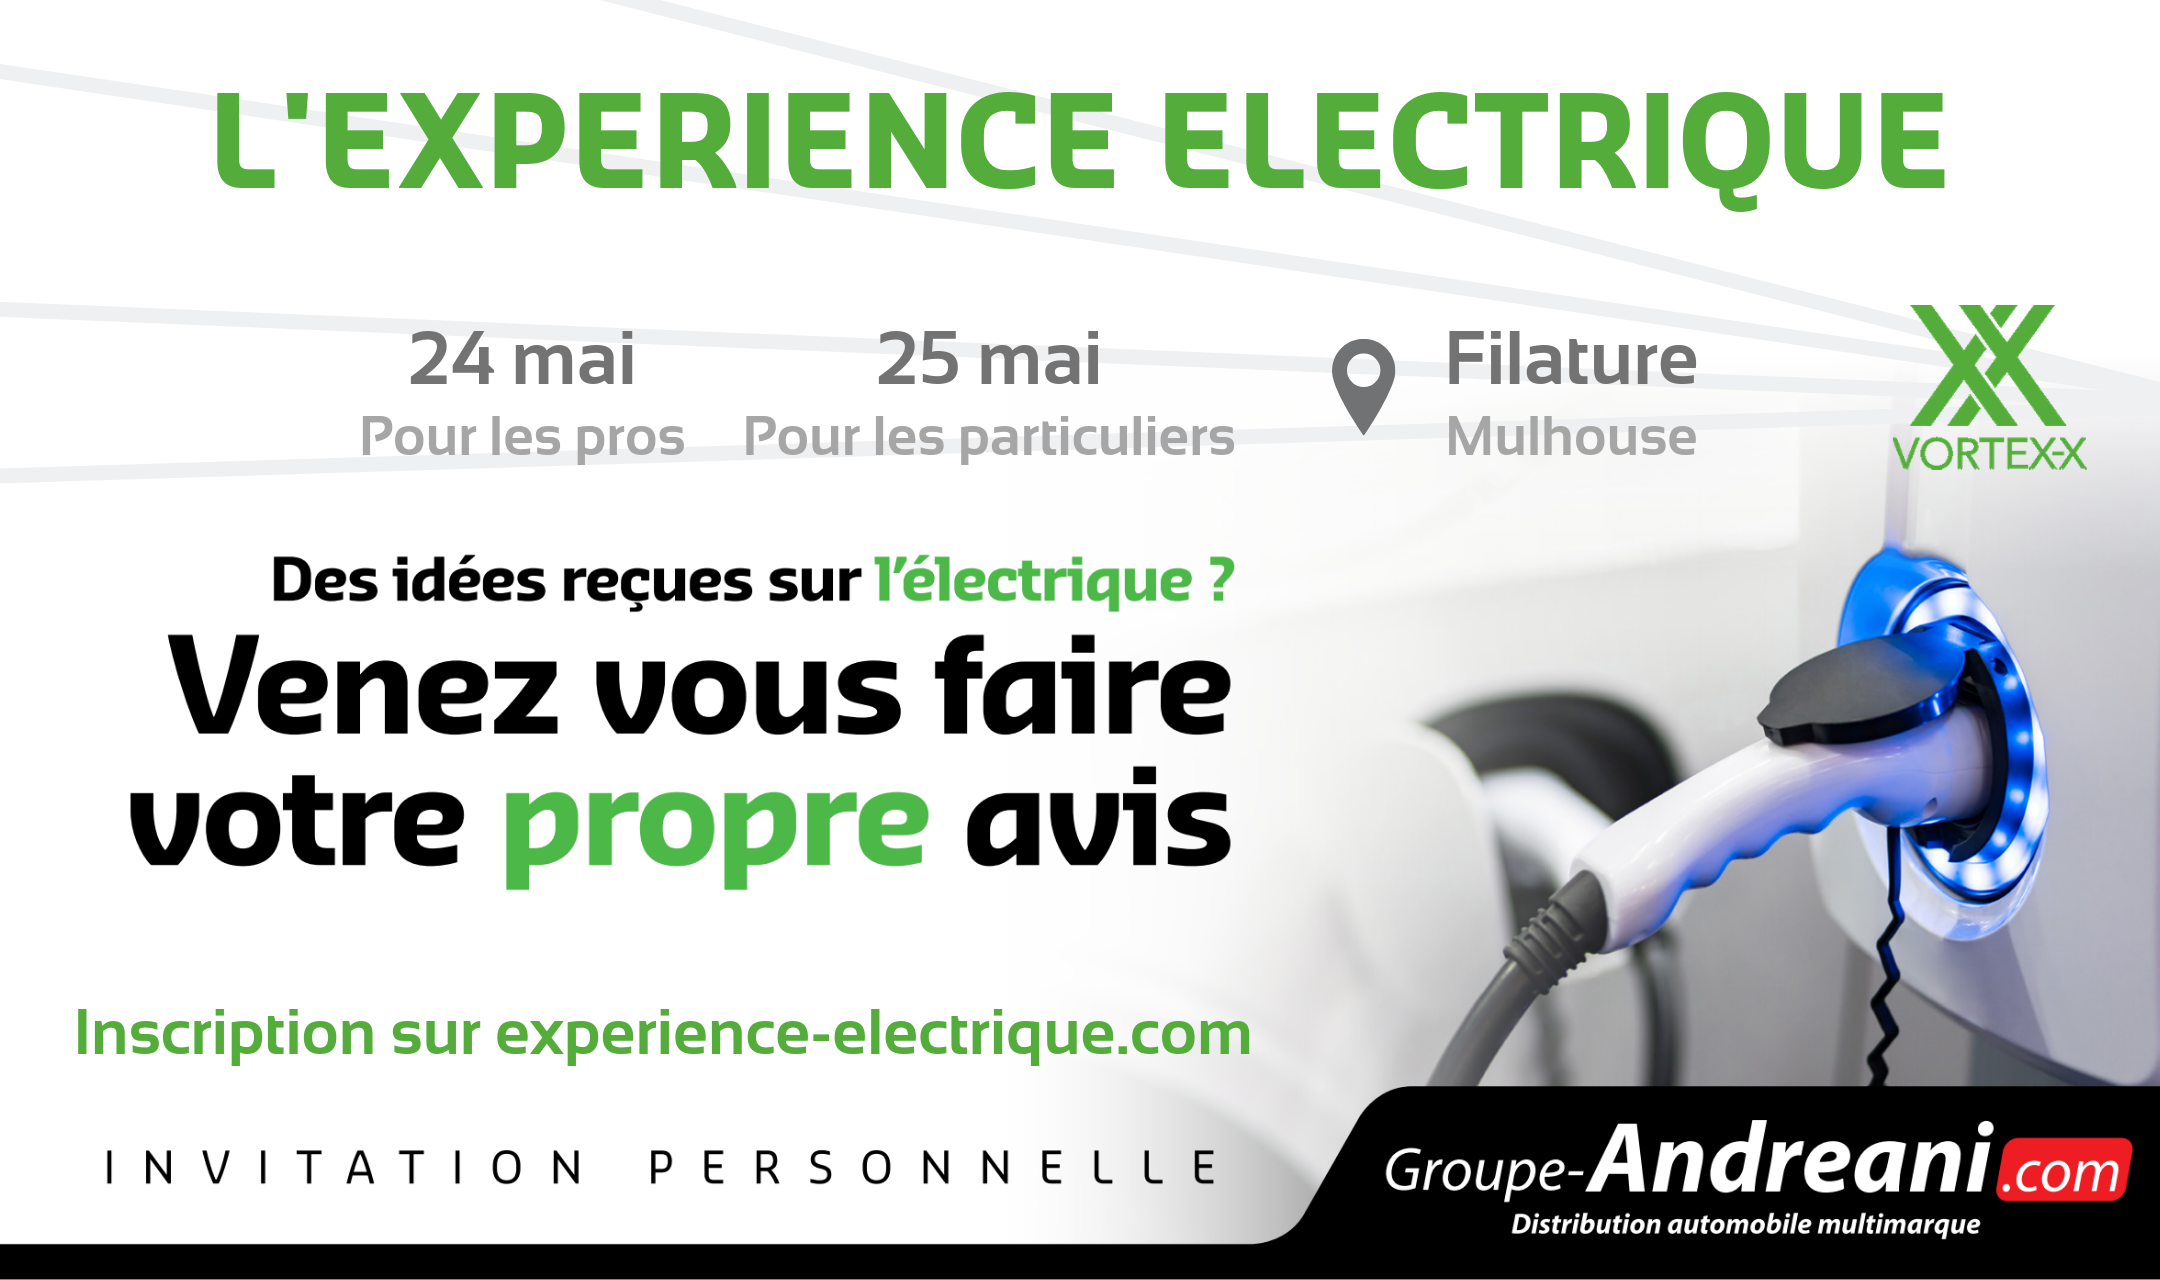 Experience-Electrique-evenement-mulhouse2